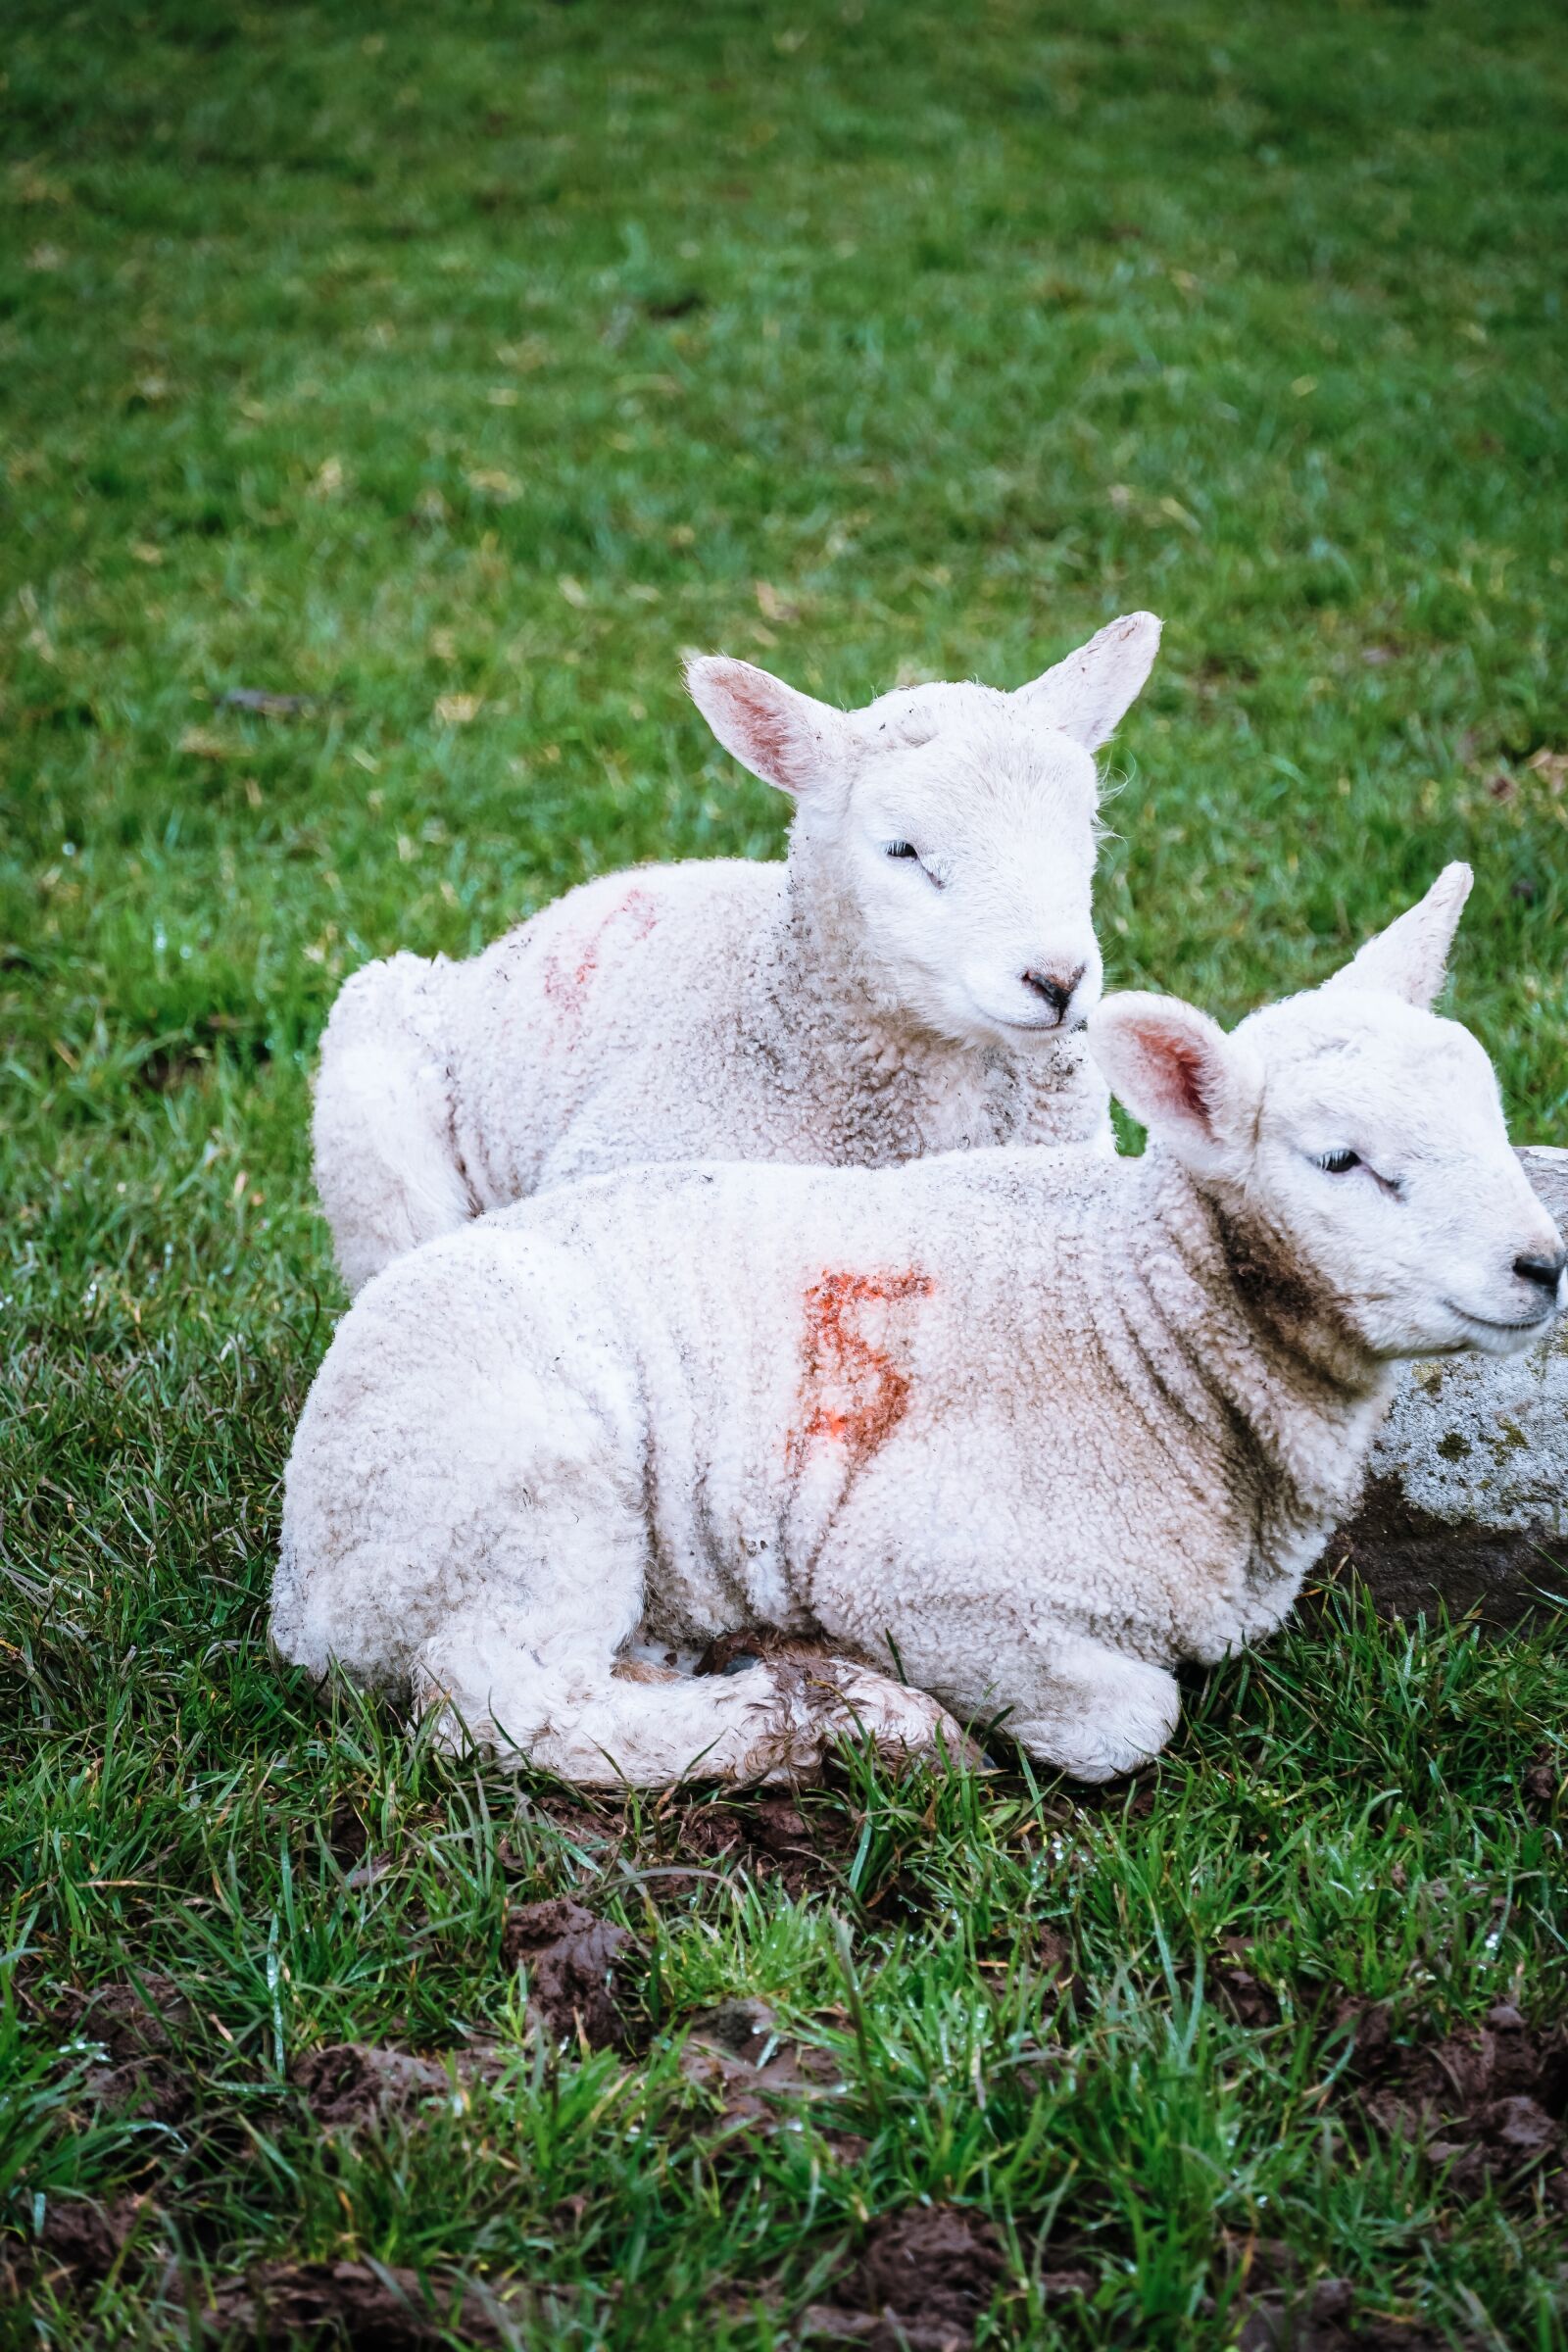 Sony a6500 sample photo. Lambs, ireland, sheep photography